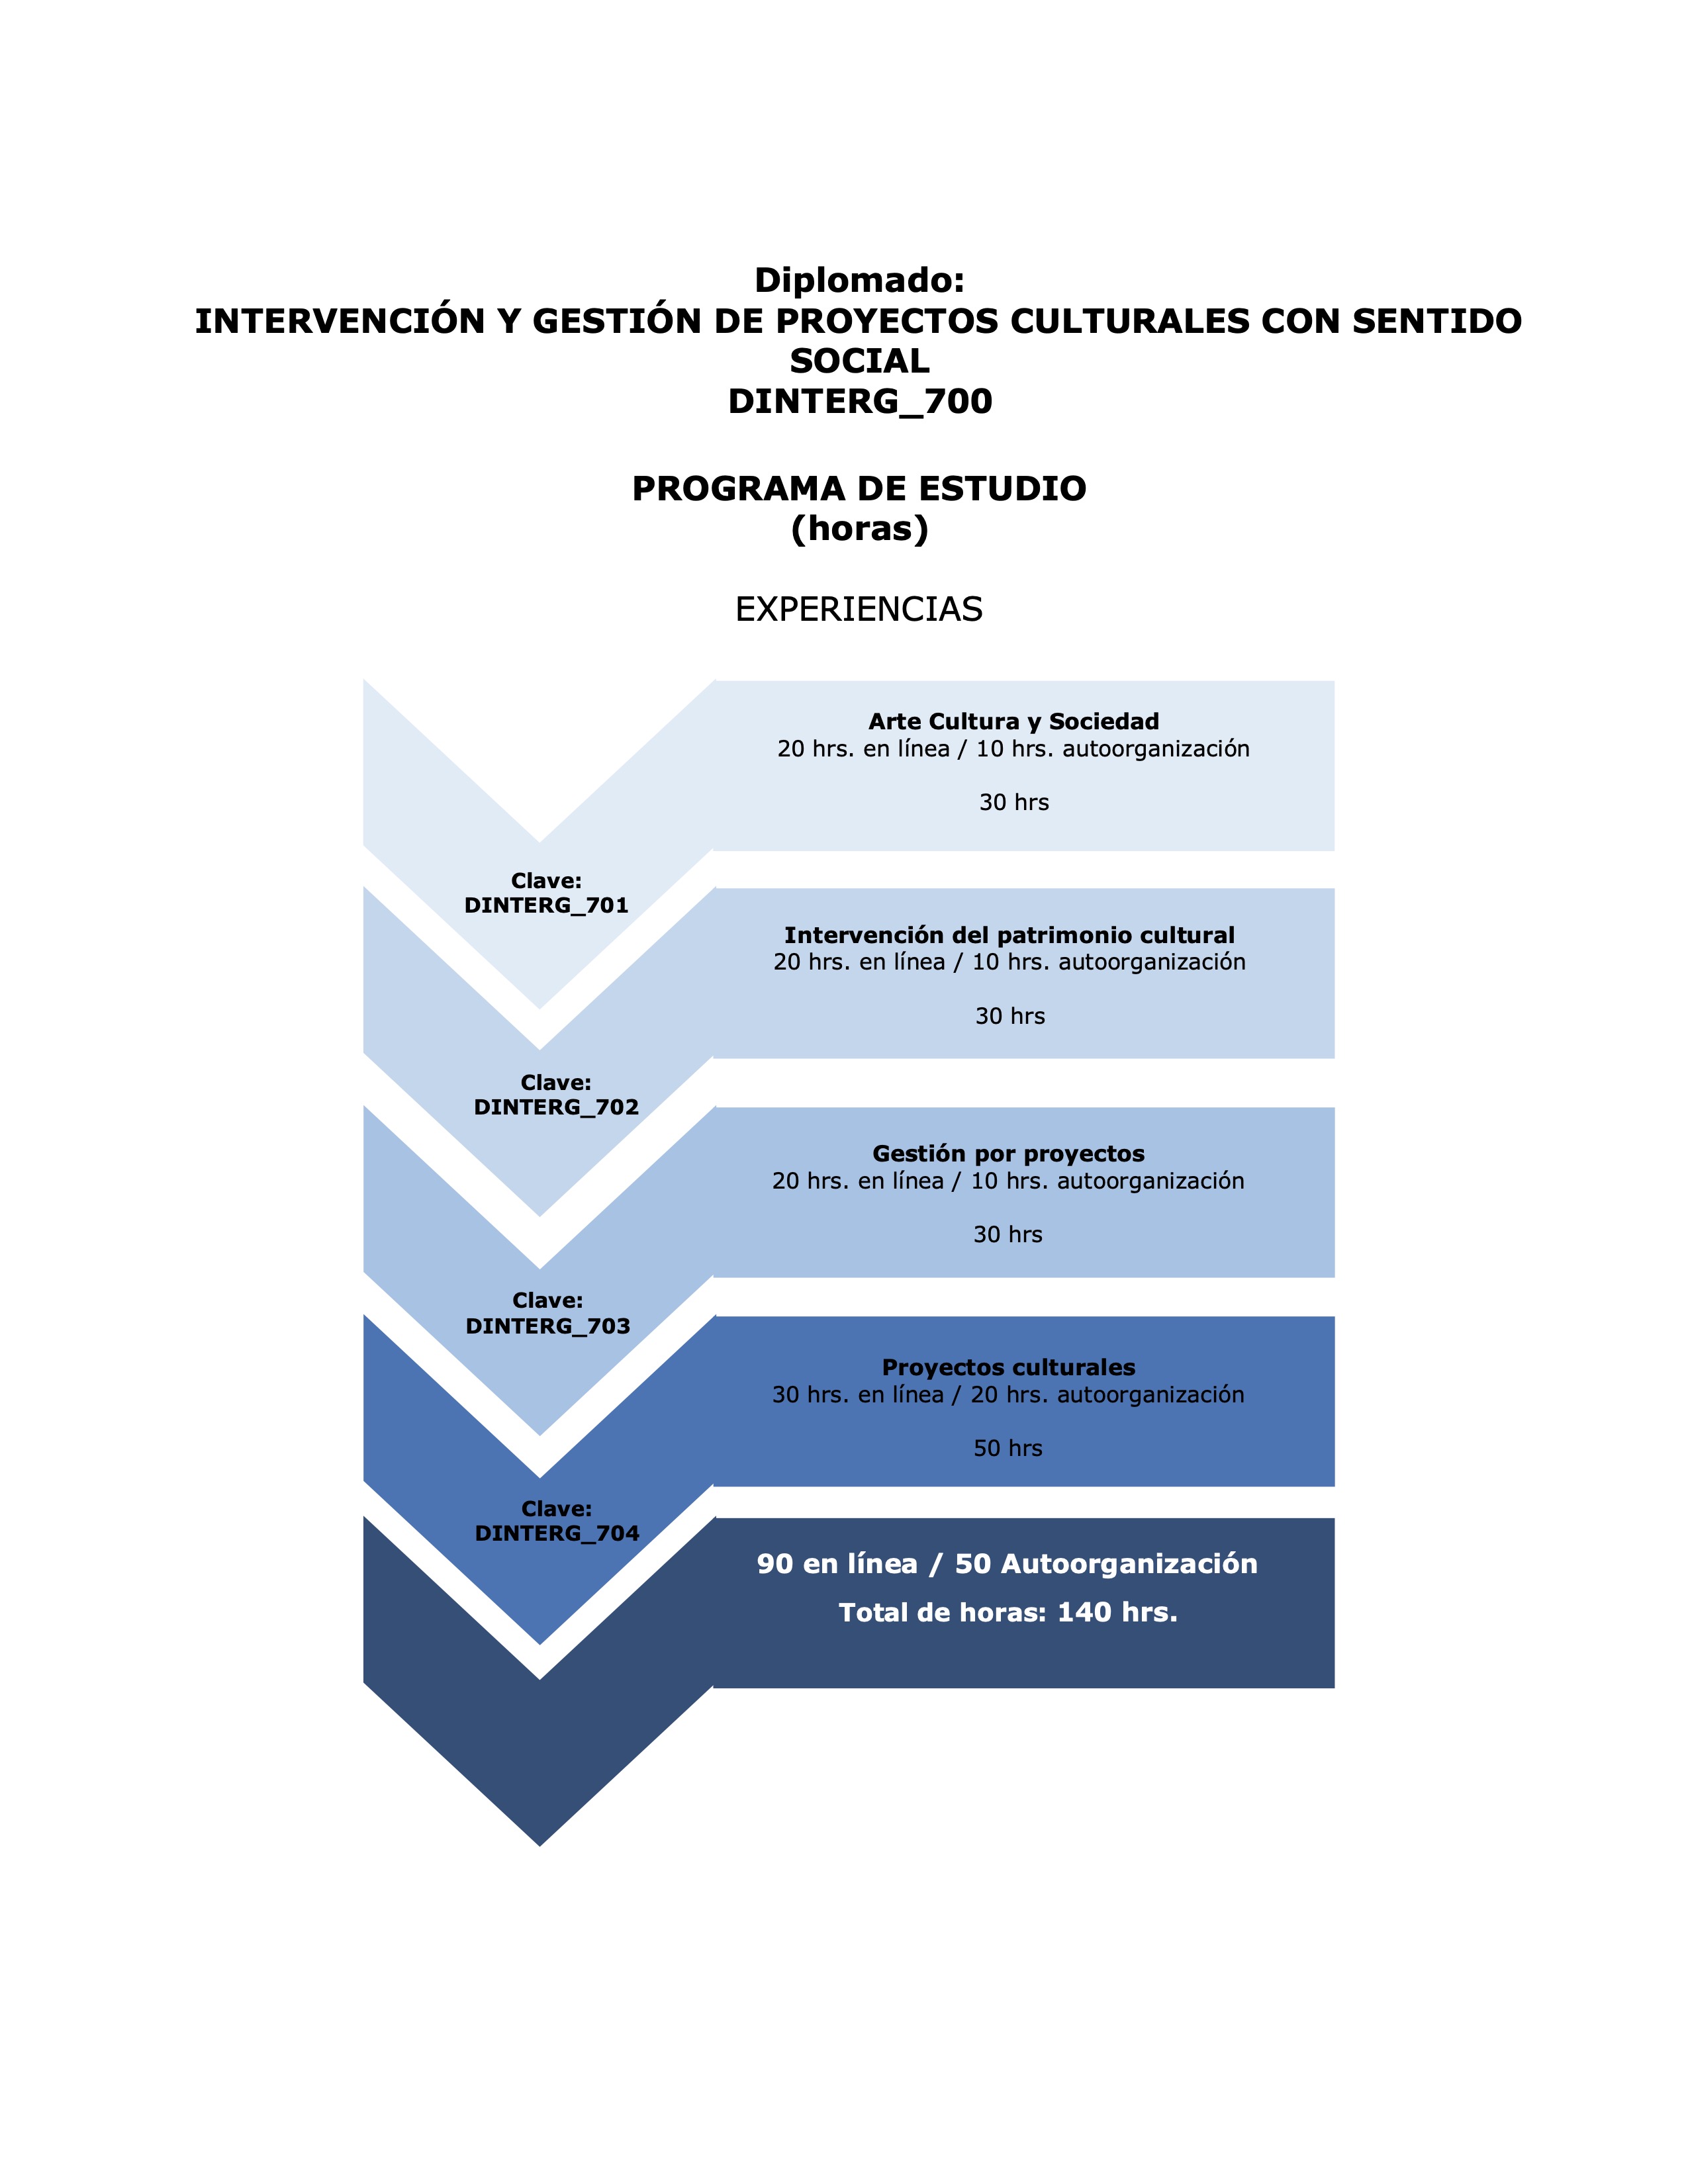 INTERVENCIÓN Y GESTIÓN DE PROYECTOS CULTURALES CON SENTIDO SOCIAL DINTERG_700